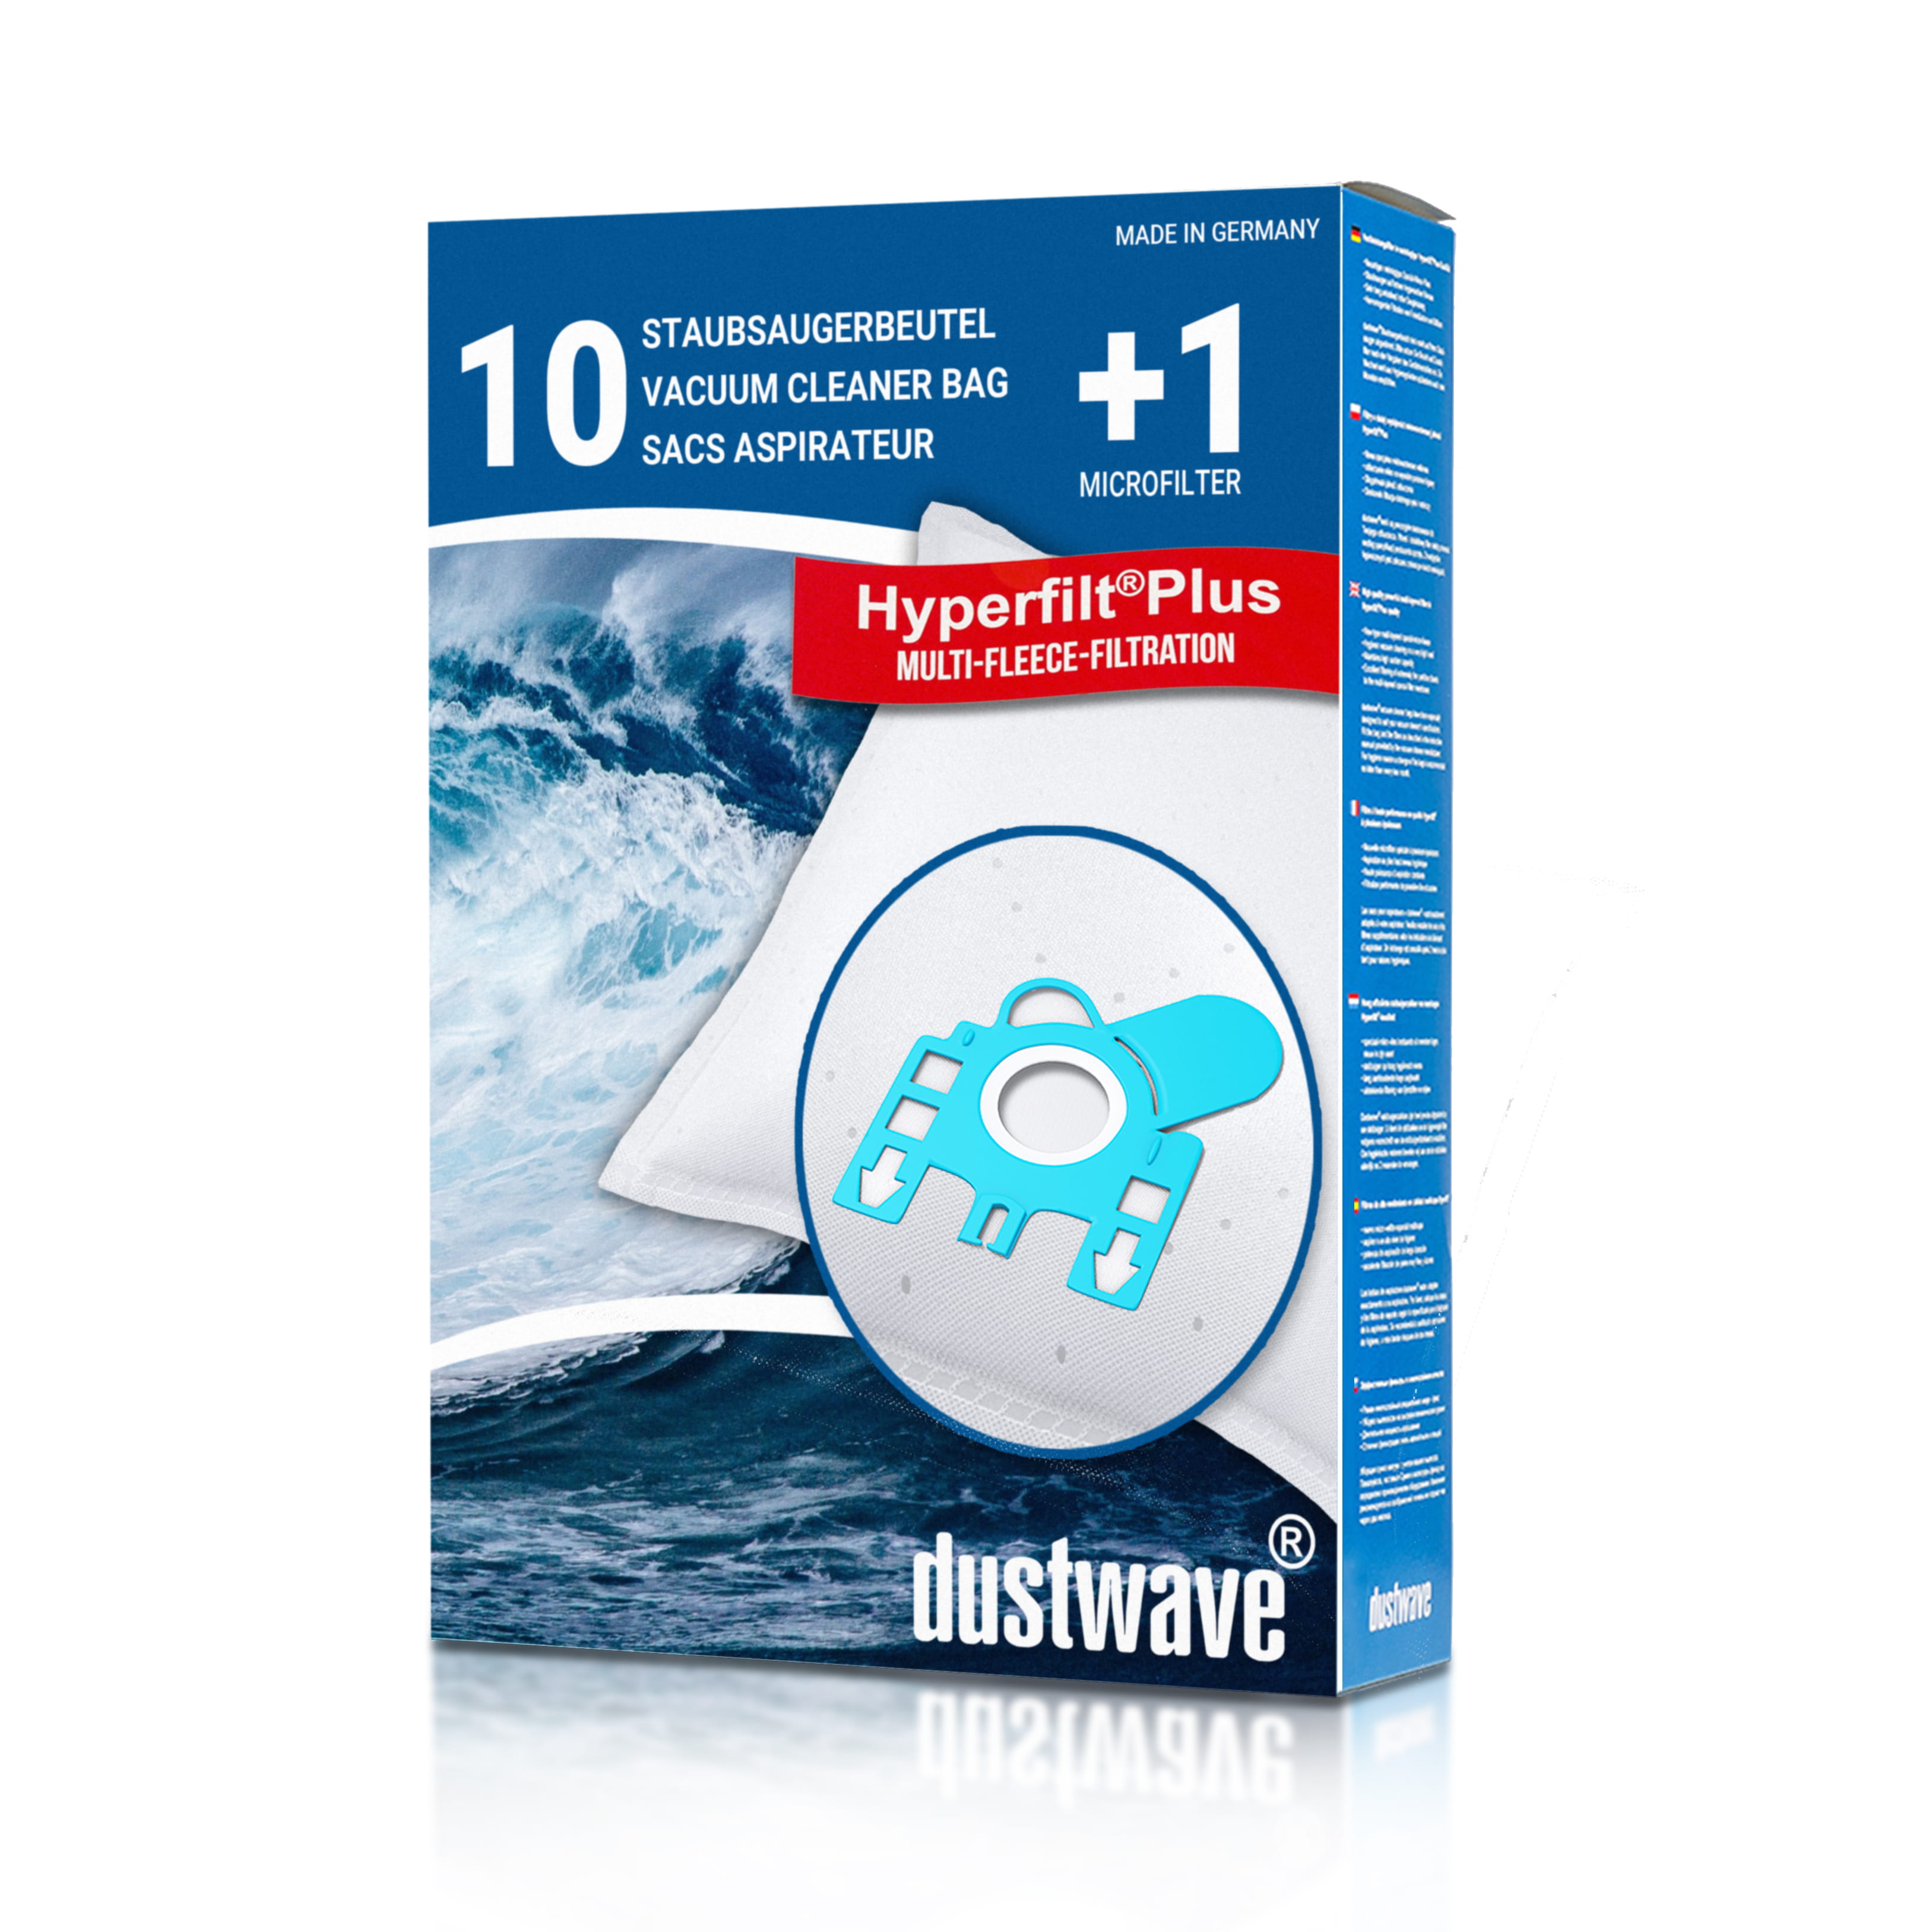 Dustwave® 10 Staubsaugerbeutel für Hoover MICROSPACE MICROPOWER - hocheffizient, mehrlagiges Mikrovlies mit Hygieneverschluss - Made in Germany